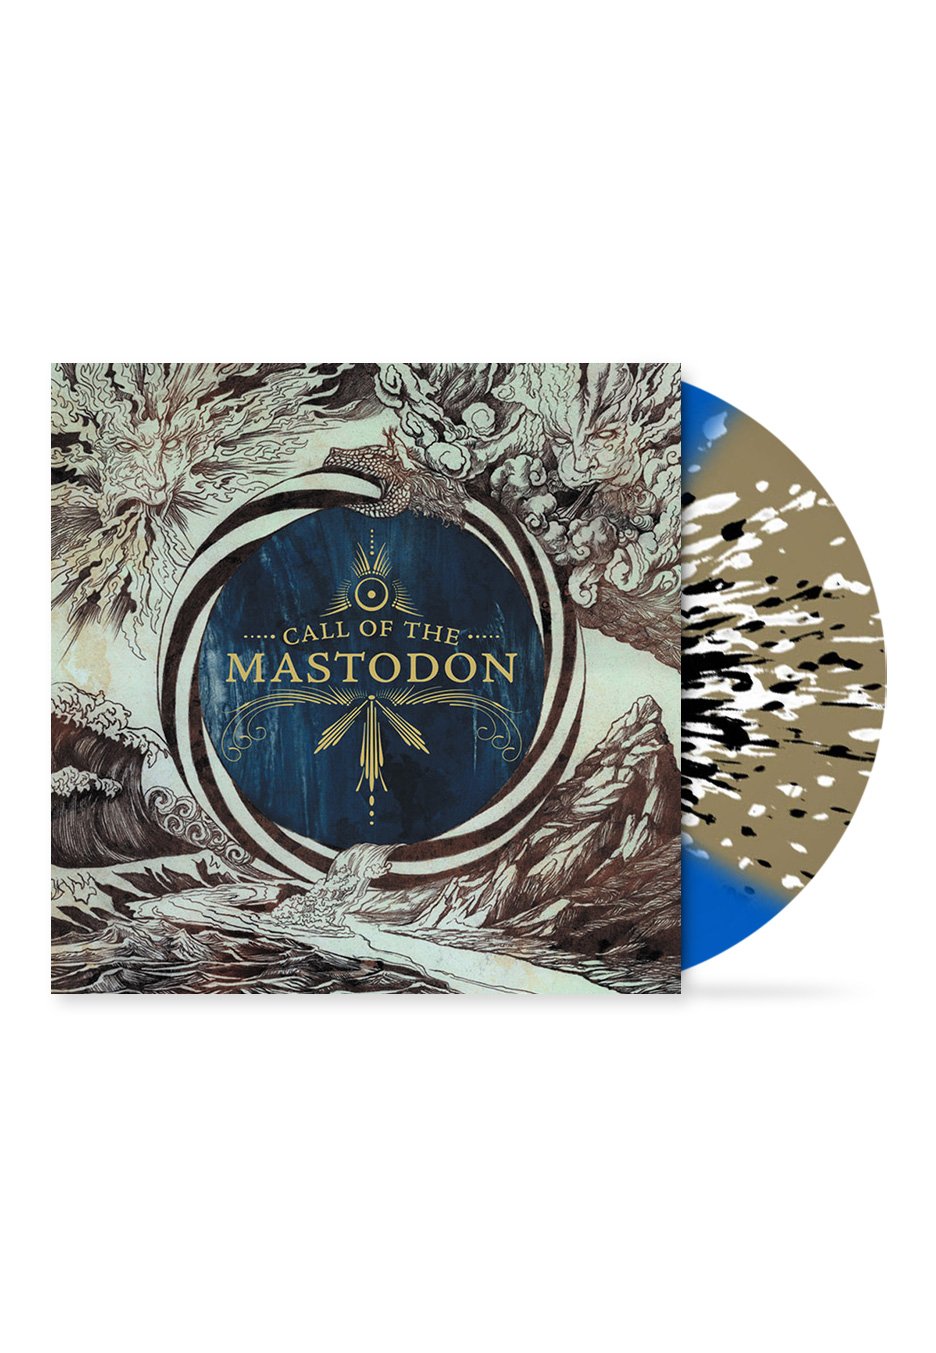 Mastodon - Call Of The Mastodon Blue, Gold & White/Black - Splattered Vinyl